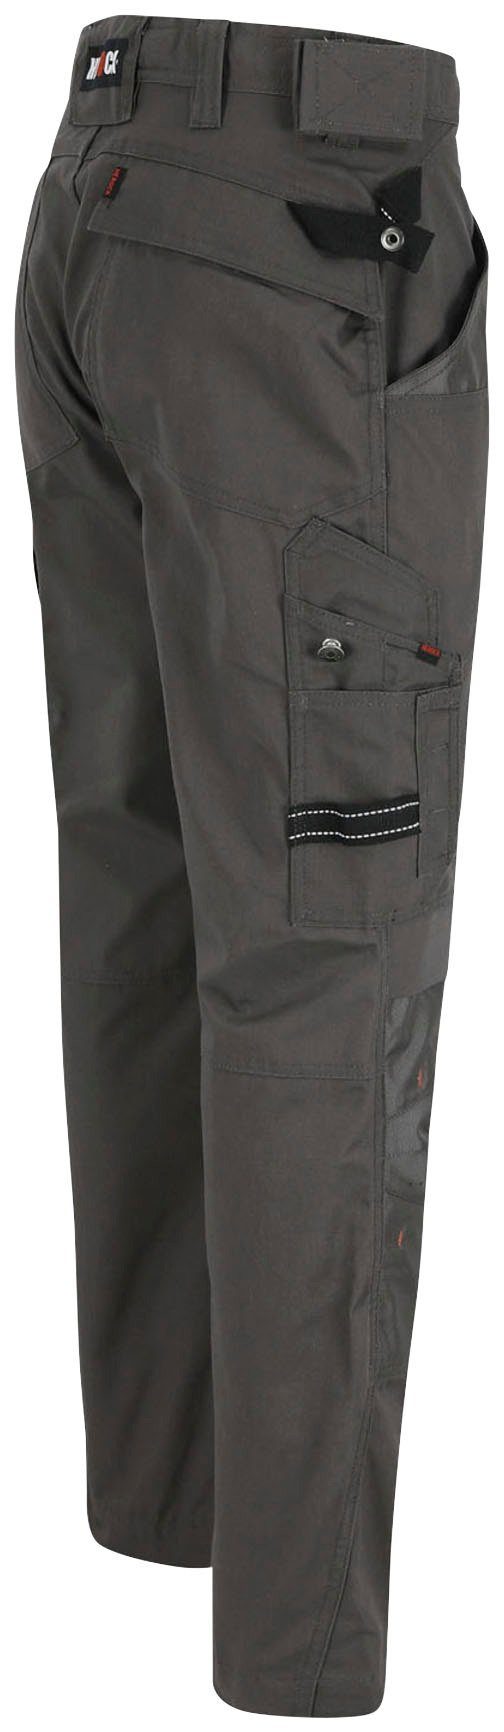 & grau Herock Taschen Regelbarer 8 bequem - Wasserabweisend Arbeitshose SHORTLEG APOLLO HOSE - Bund - leicht